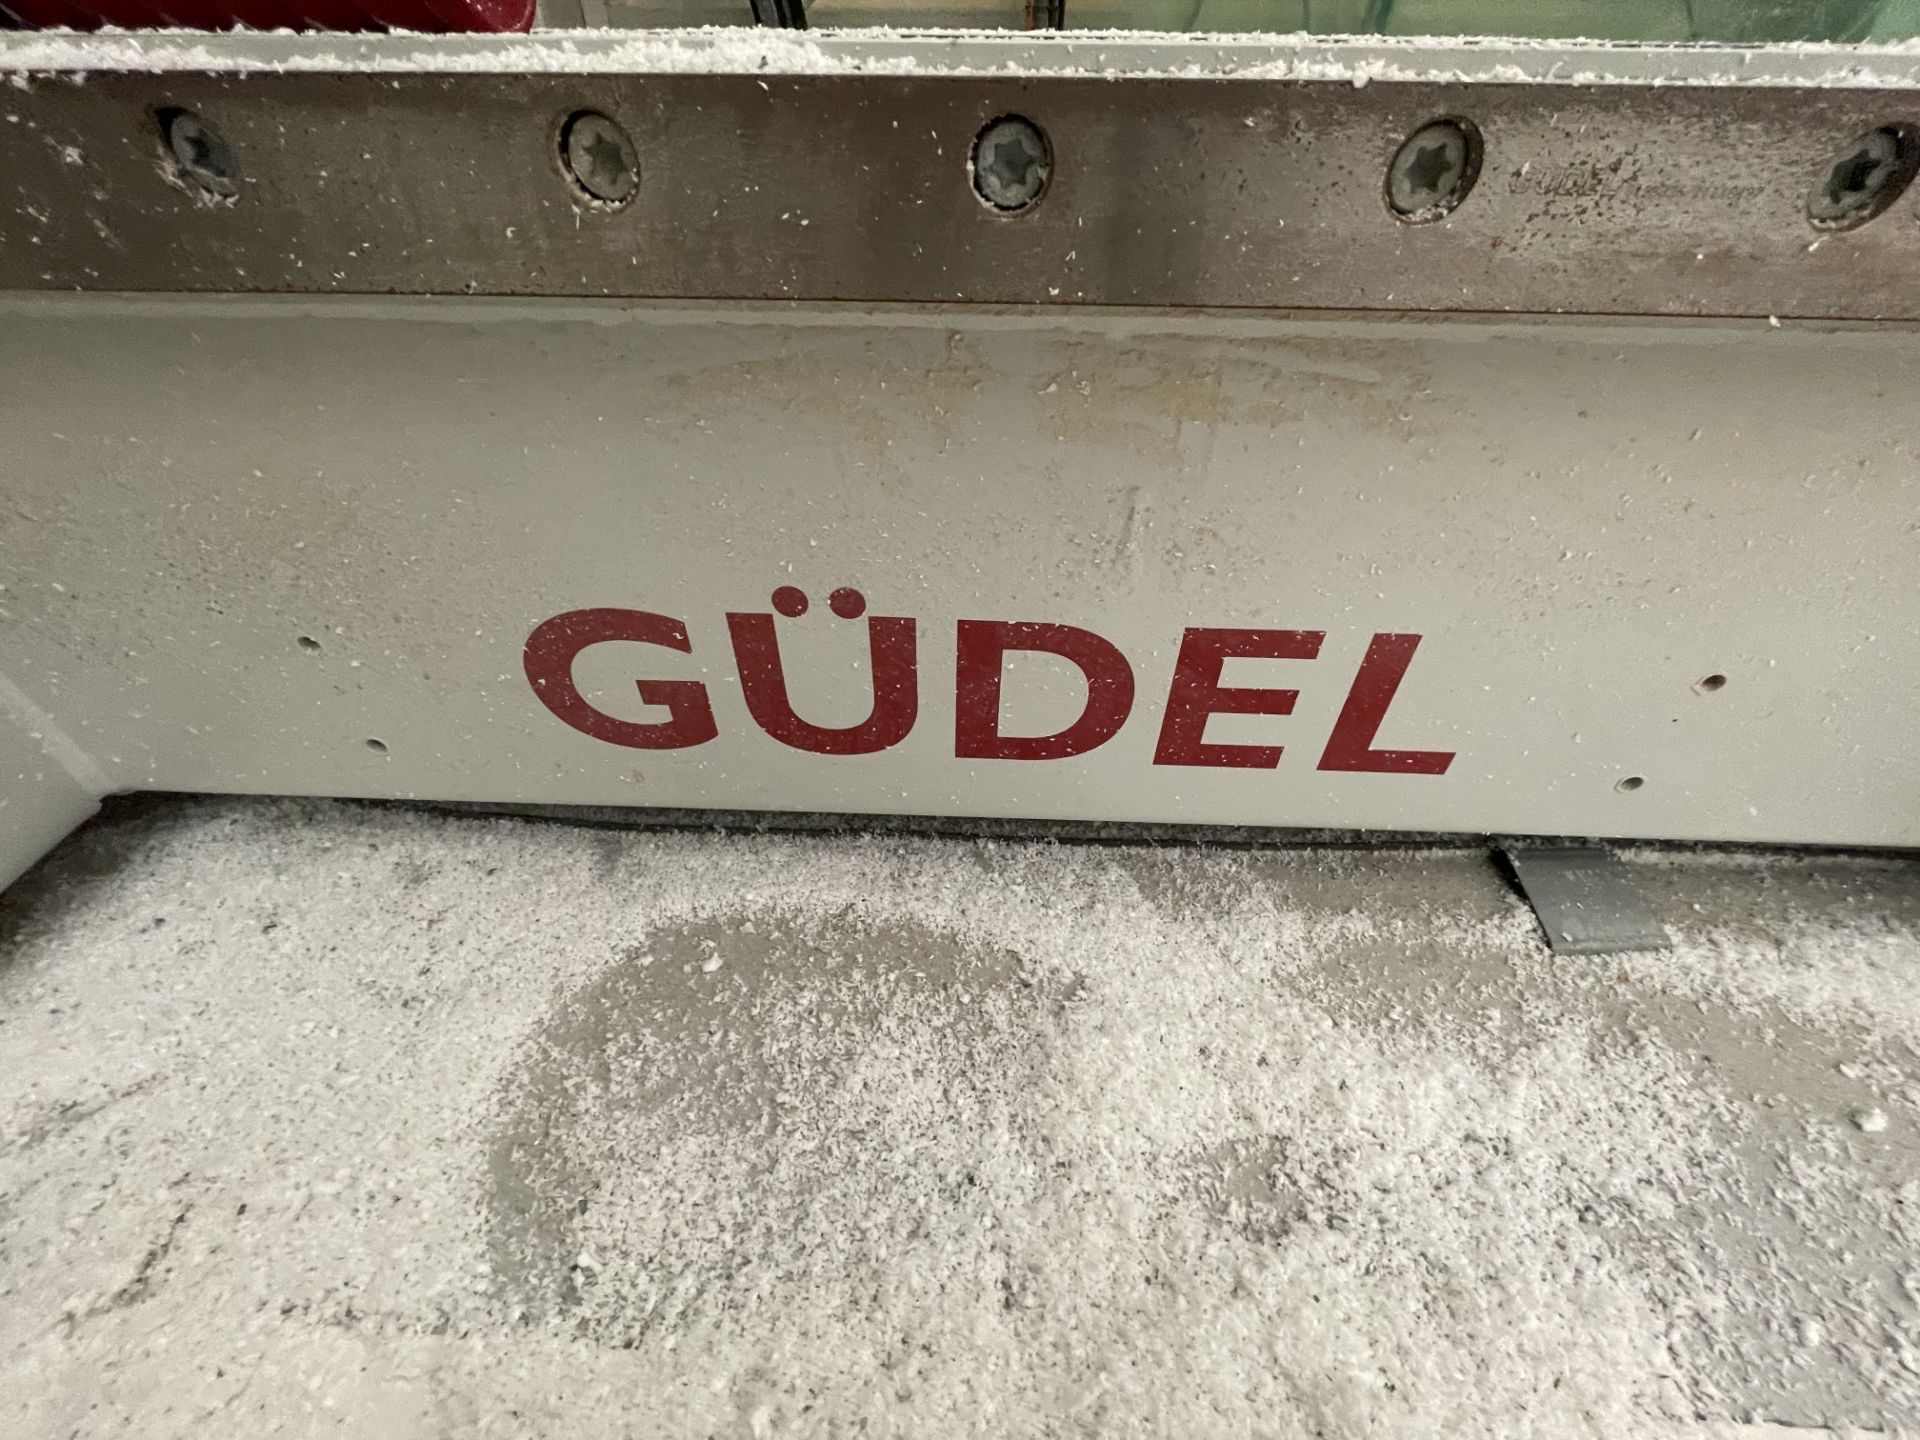 2018 Grudel TMF-3 c.11m Slide S/No. 9910093516 - Image 2 of 7